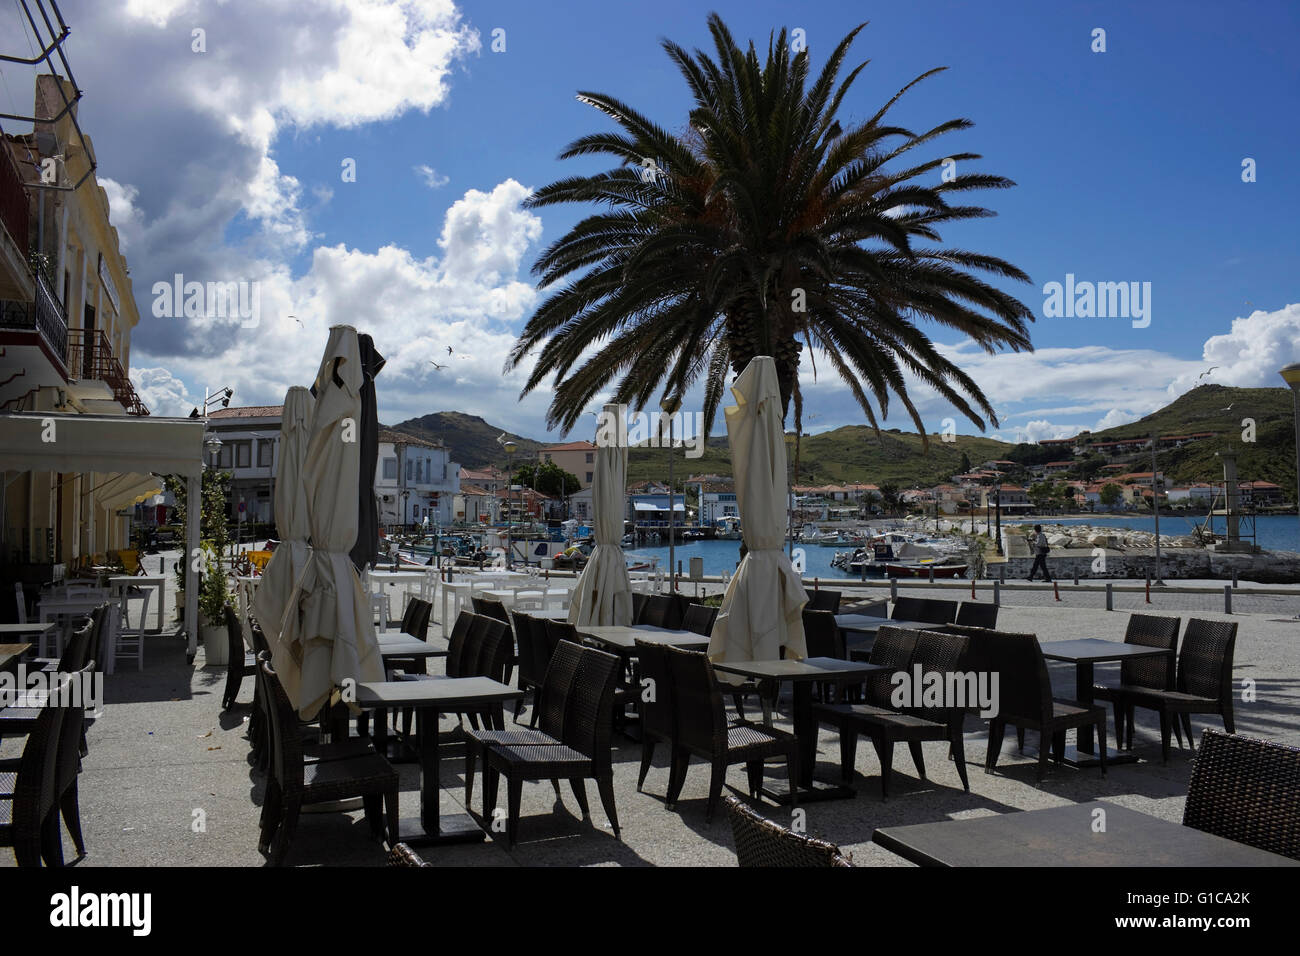 Palme und leeren Café-Restaurant Tische mit Plätzen auf dem Bürgersteig an der Hafenpromenade mit Blick auf die Stadt Kai. Stockfoto